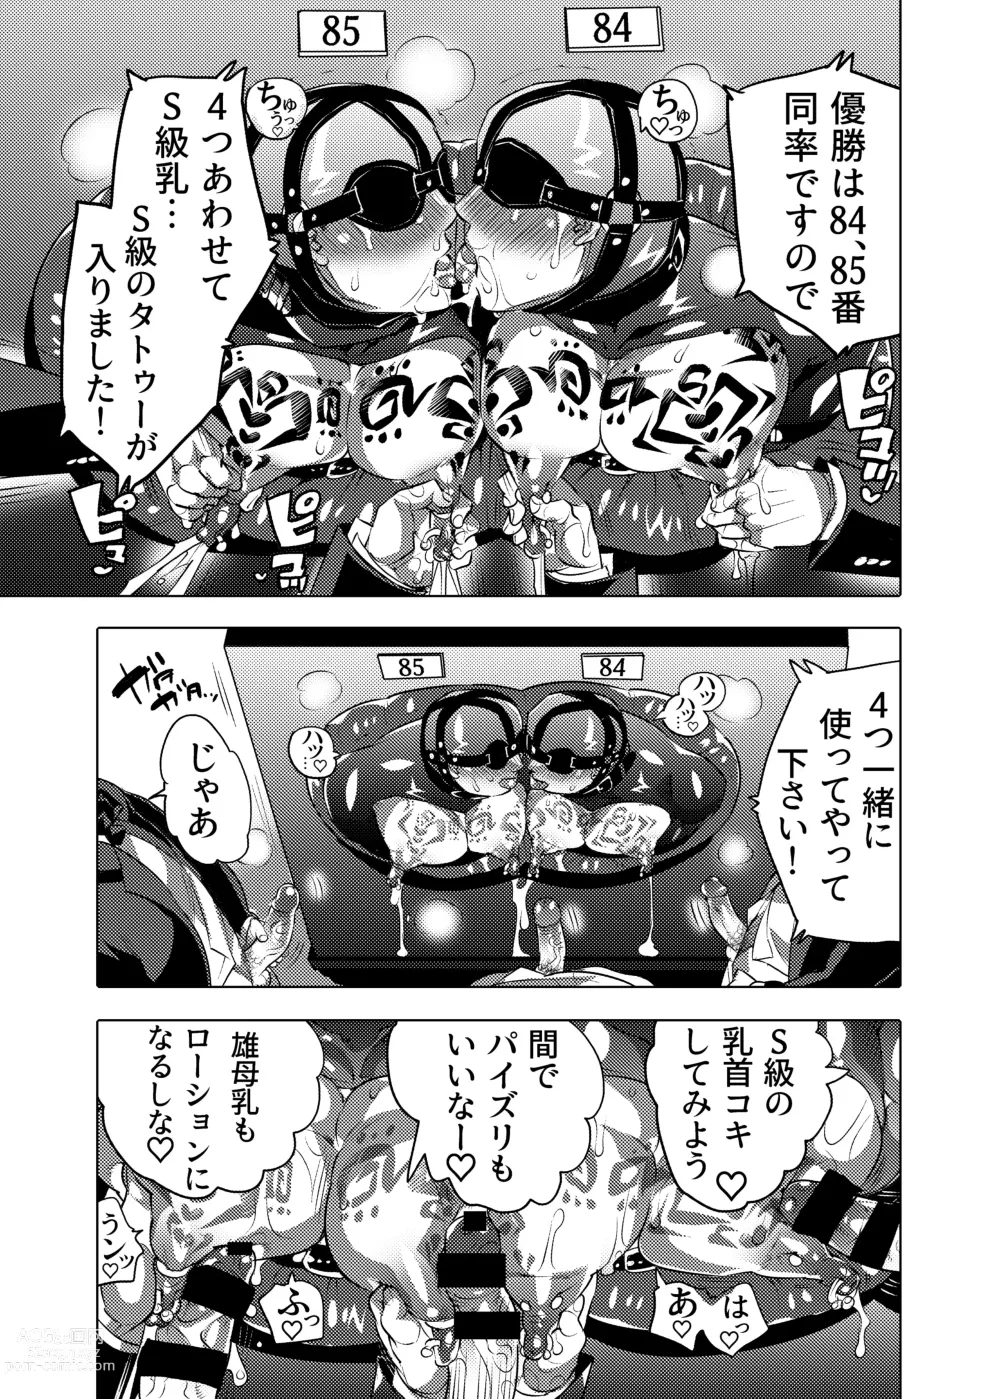 Page 57 of doujinshi Ochichi Hinpyoukai